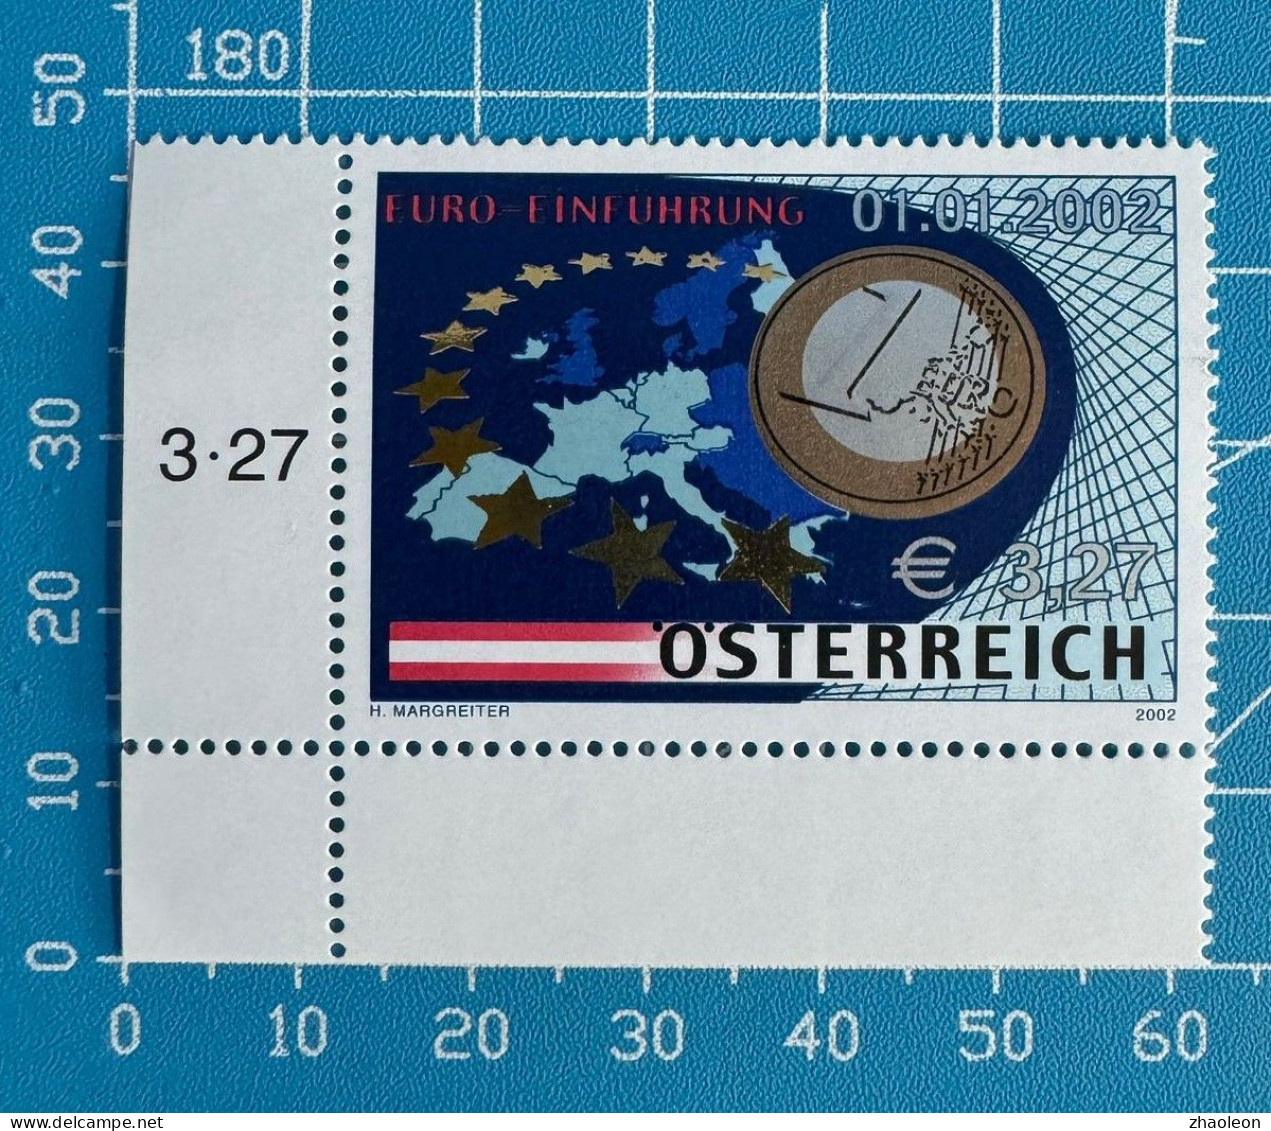 EURO-Einführung/ EURO Introduction Austria 2368 - Neufs